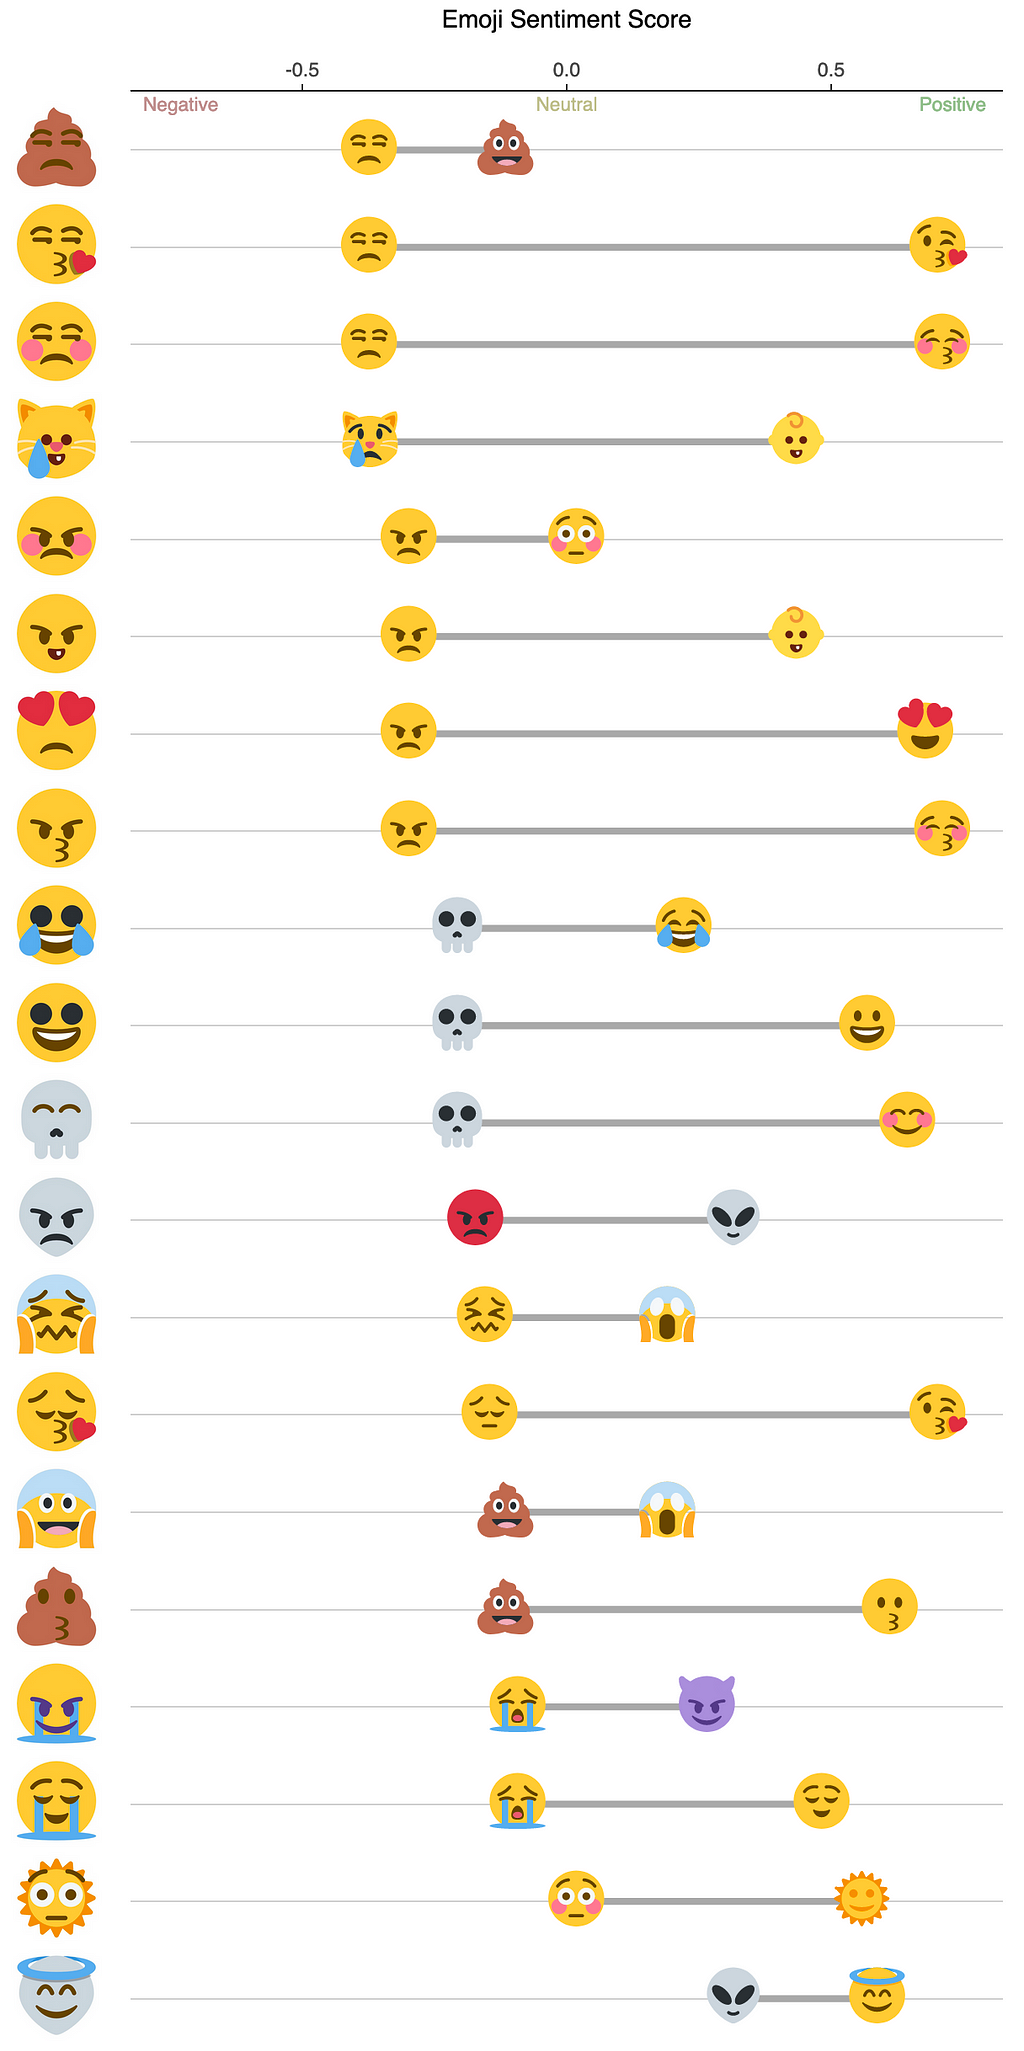 Makeover Monday: Visualizing the Emoji Mashup Twitter Bot | LaptrinhX